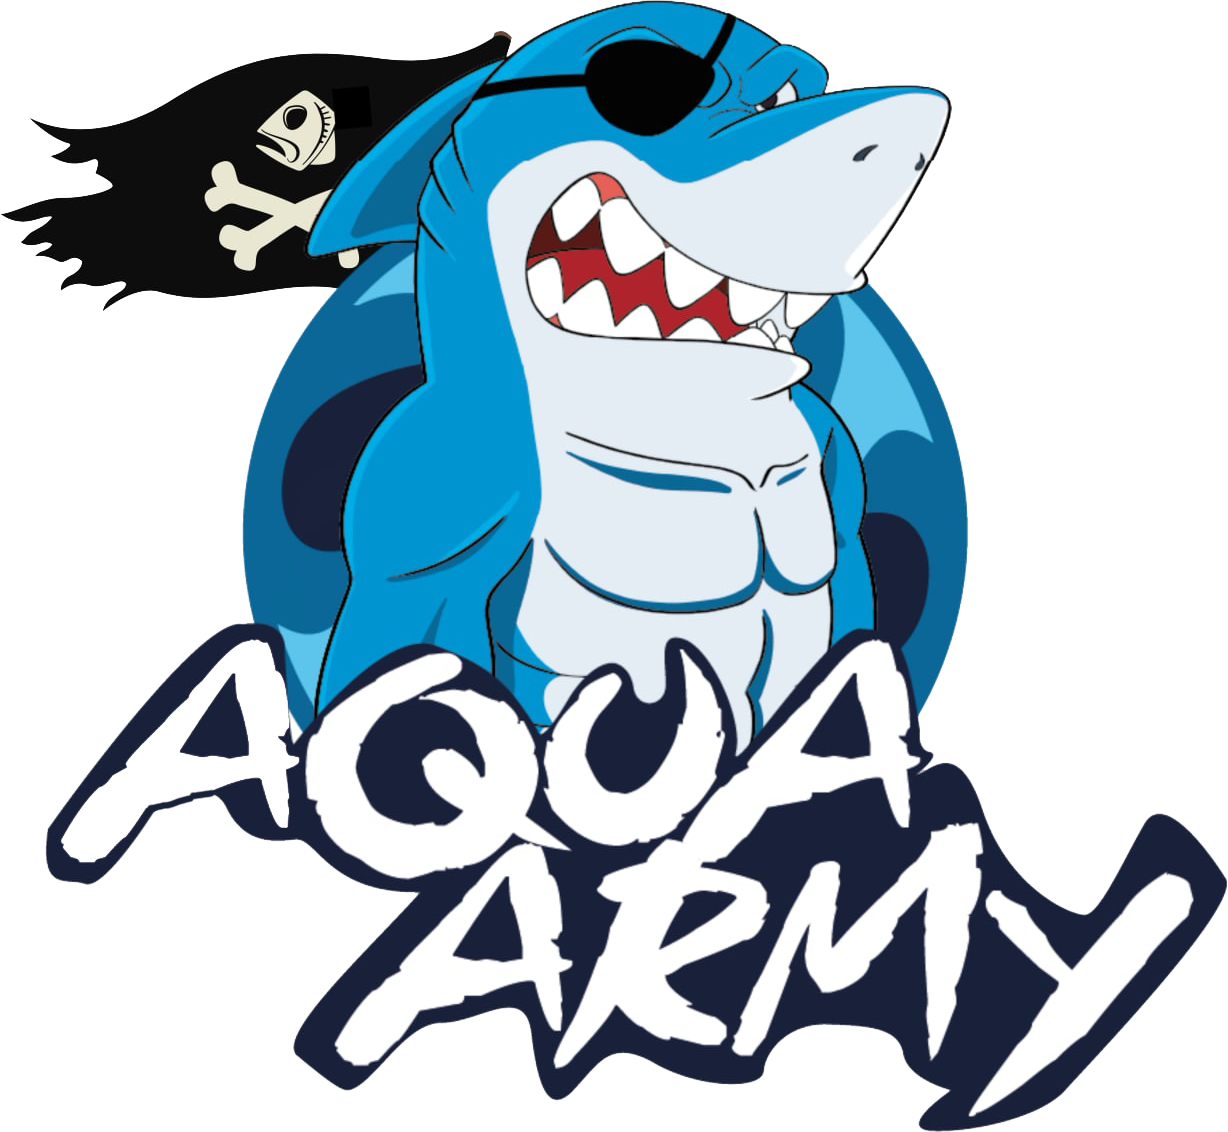 Aqua Army NFT